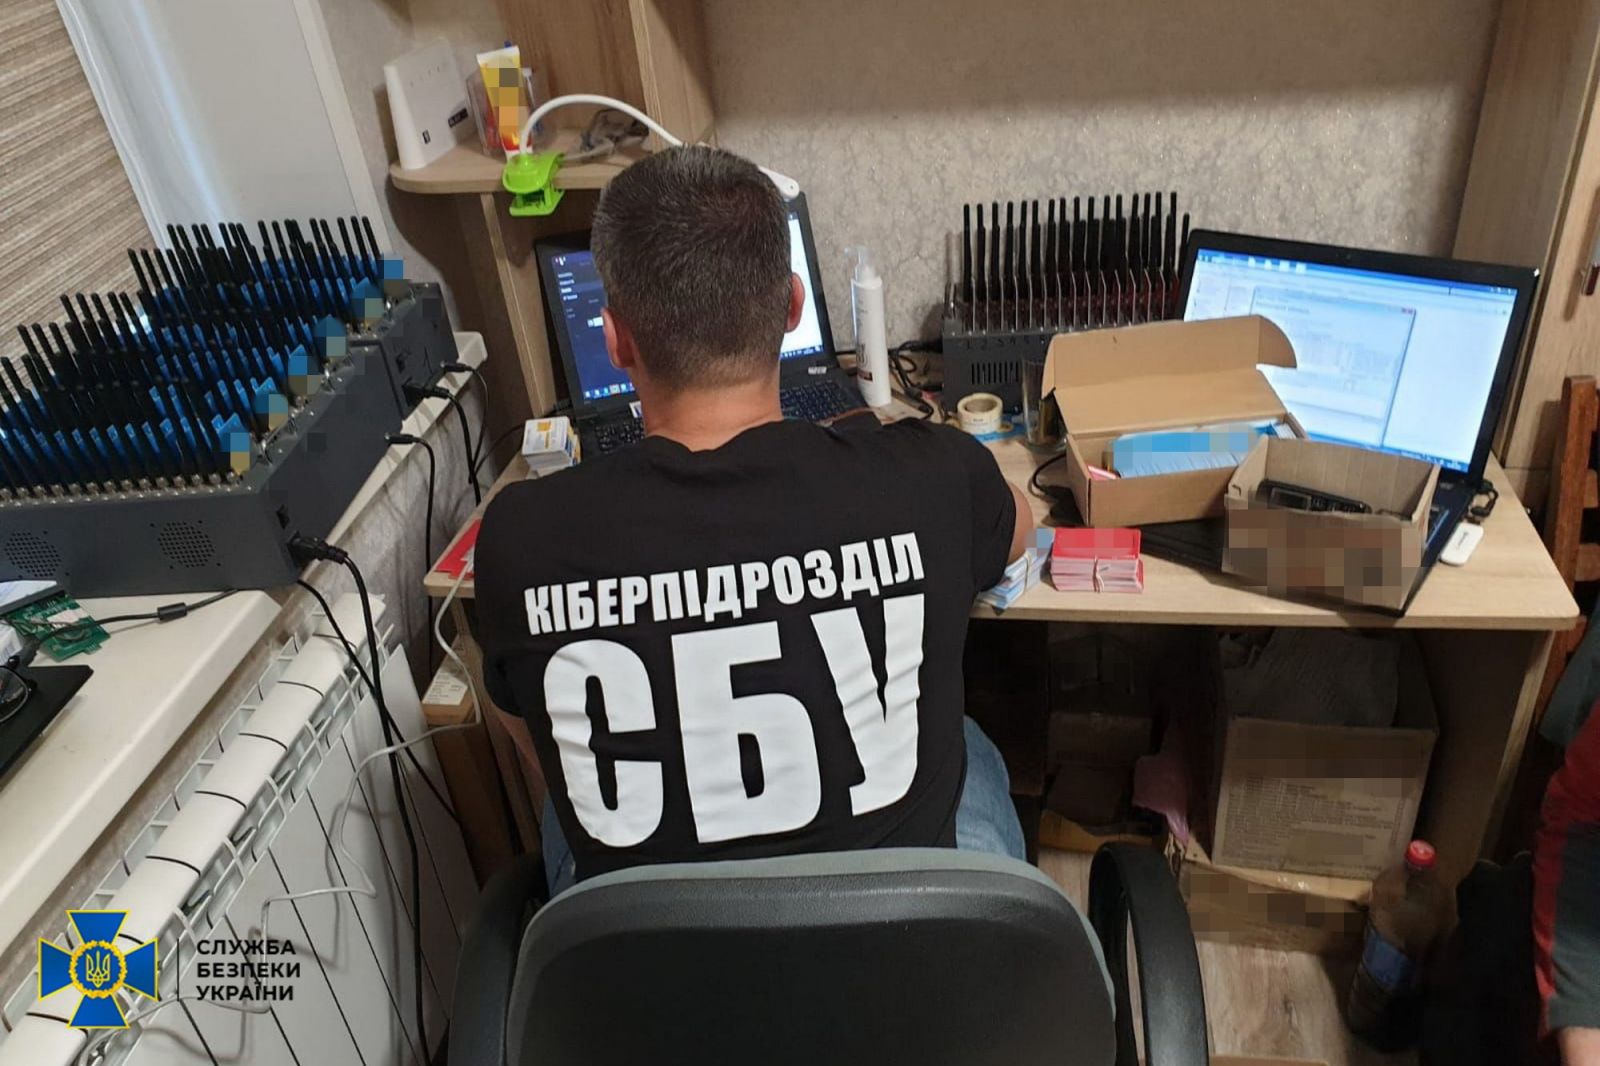 "Армия ботов", которую собрал харьковчанин, пыталась сорвать вакцинацию в Украине